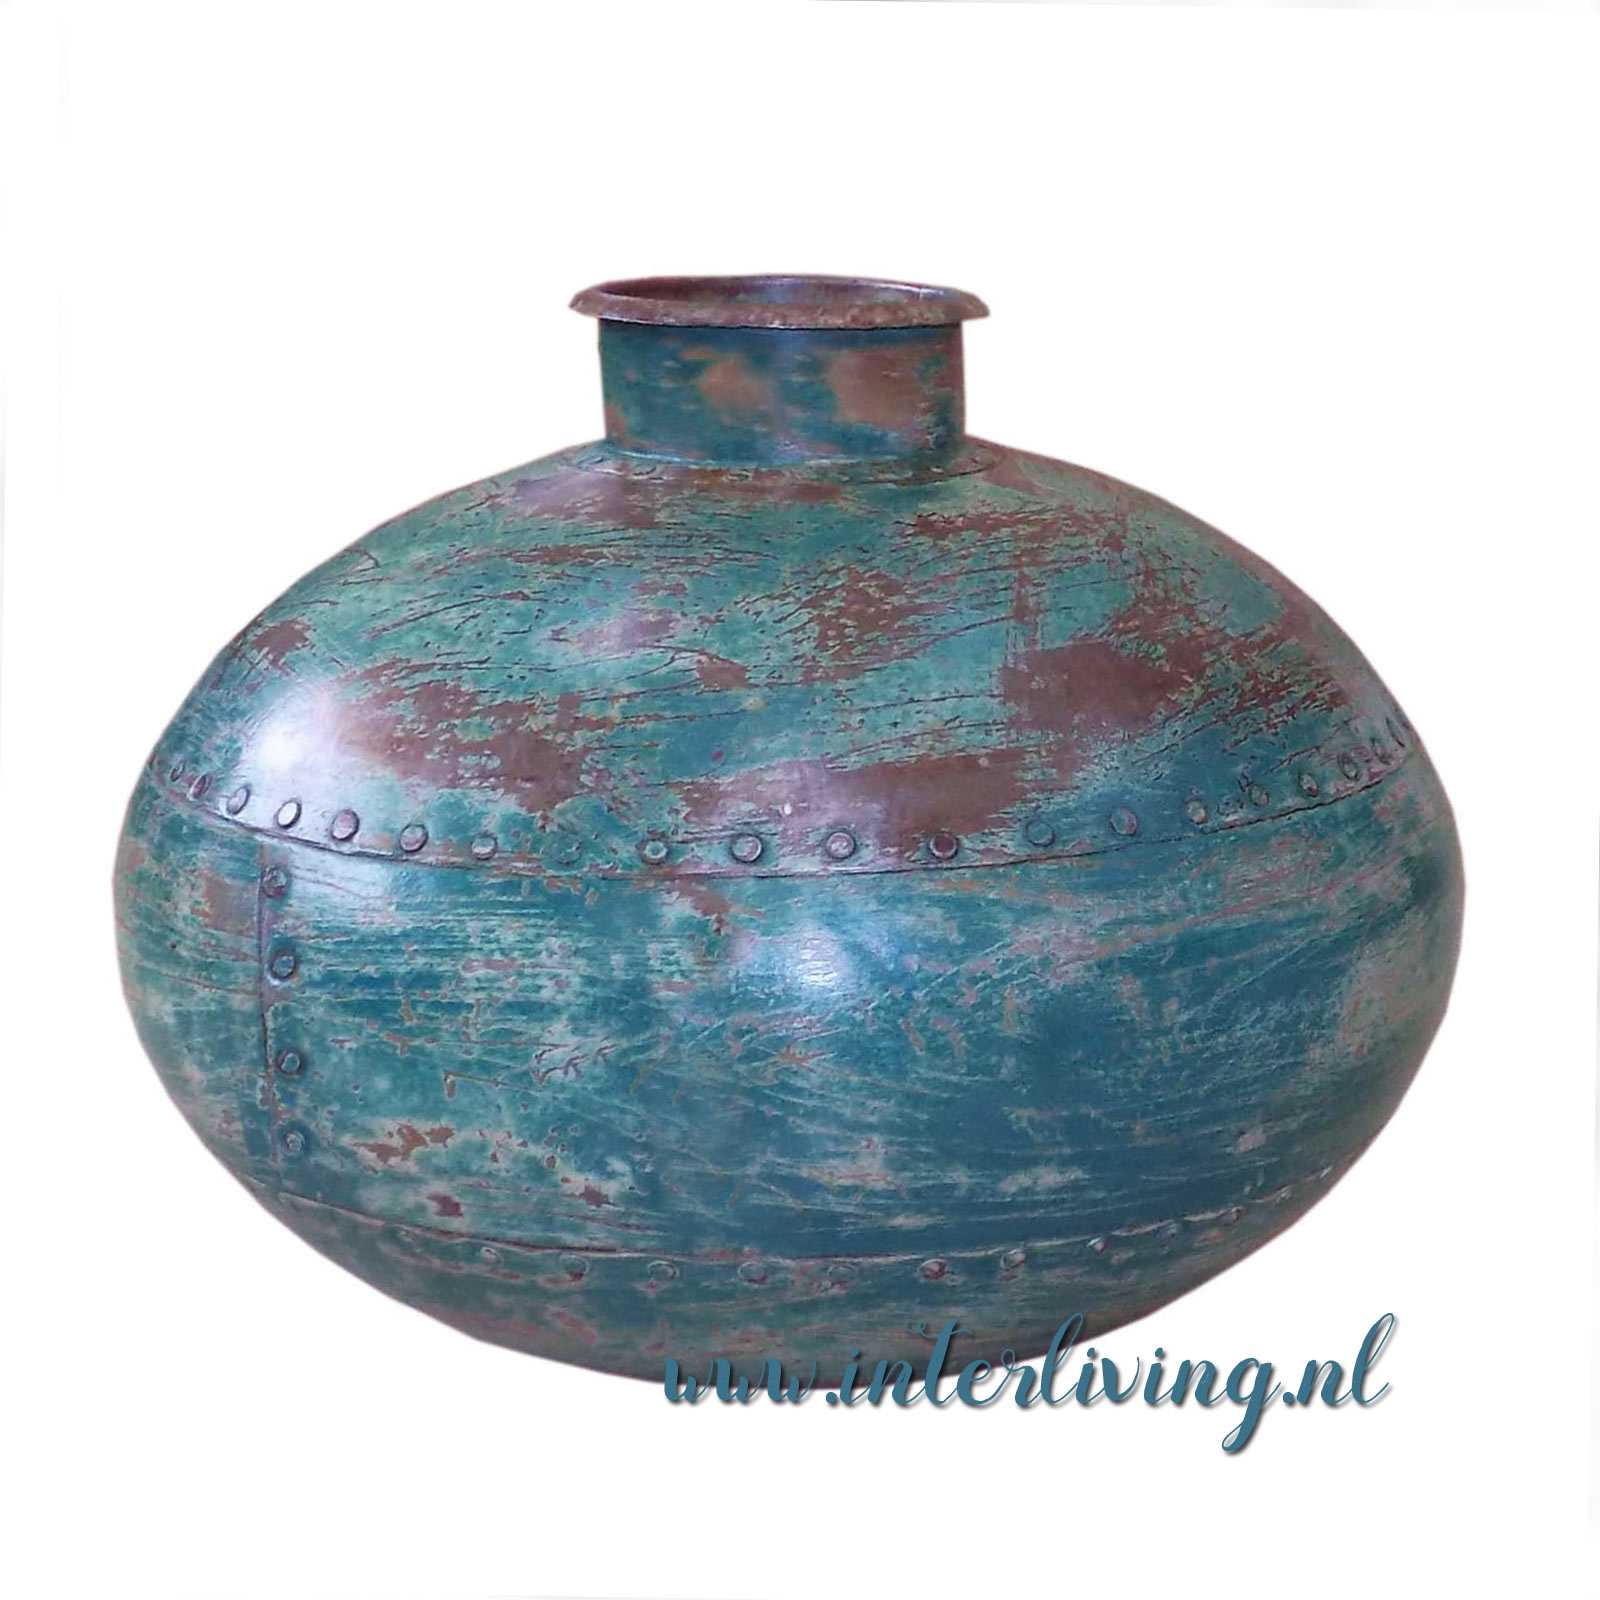 protest personeelszaken advocaat vintage waterkruik van oud metaal (ijzer) - grote pot uit India